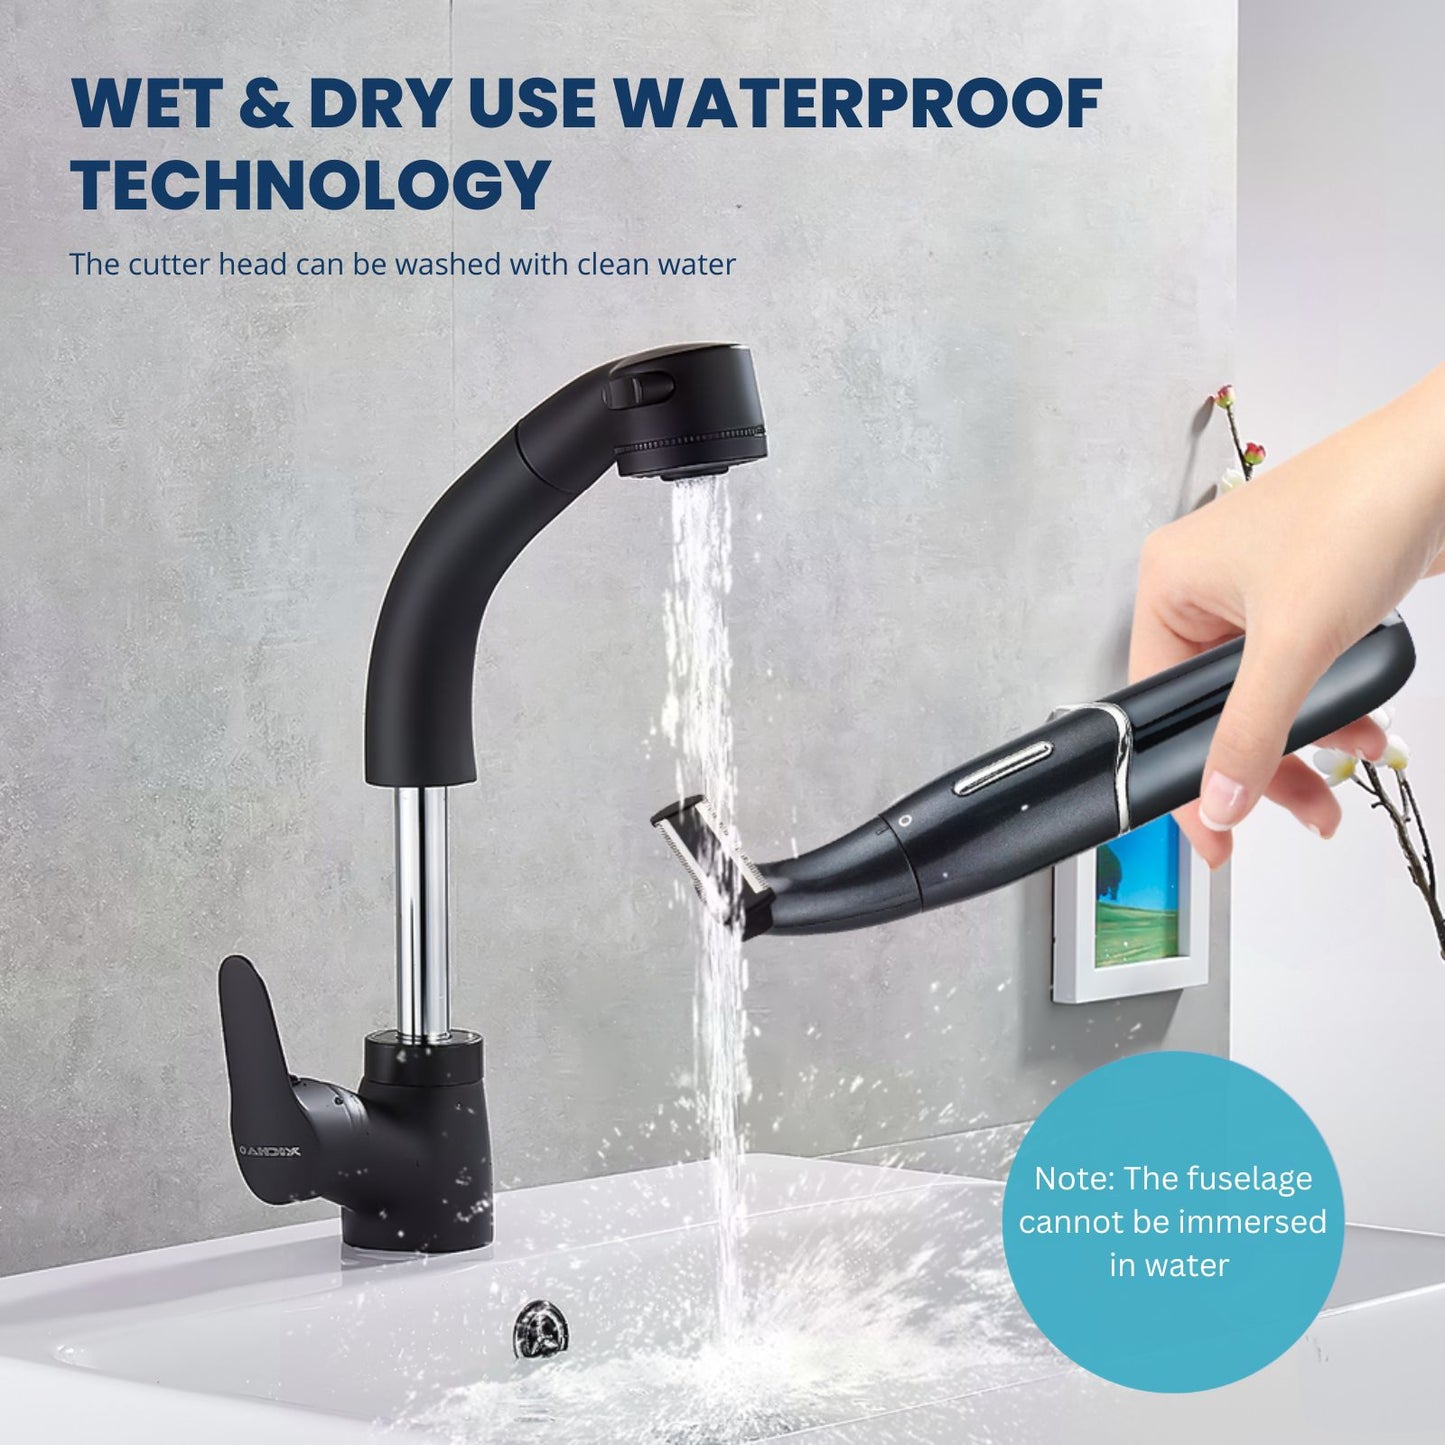 waterproof technology